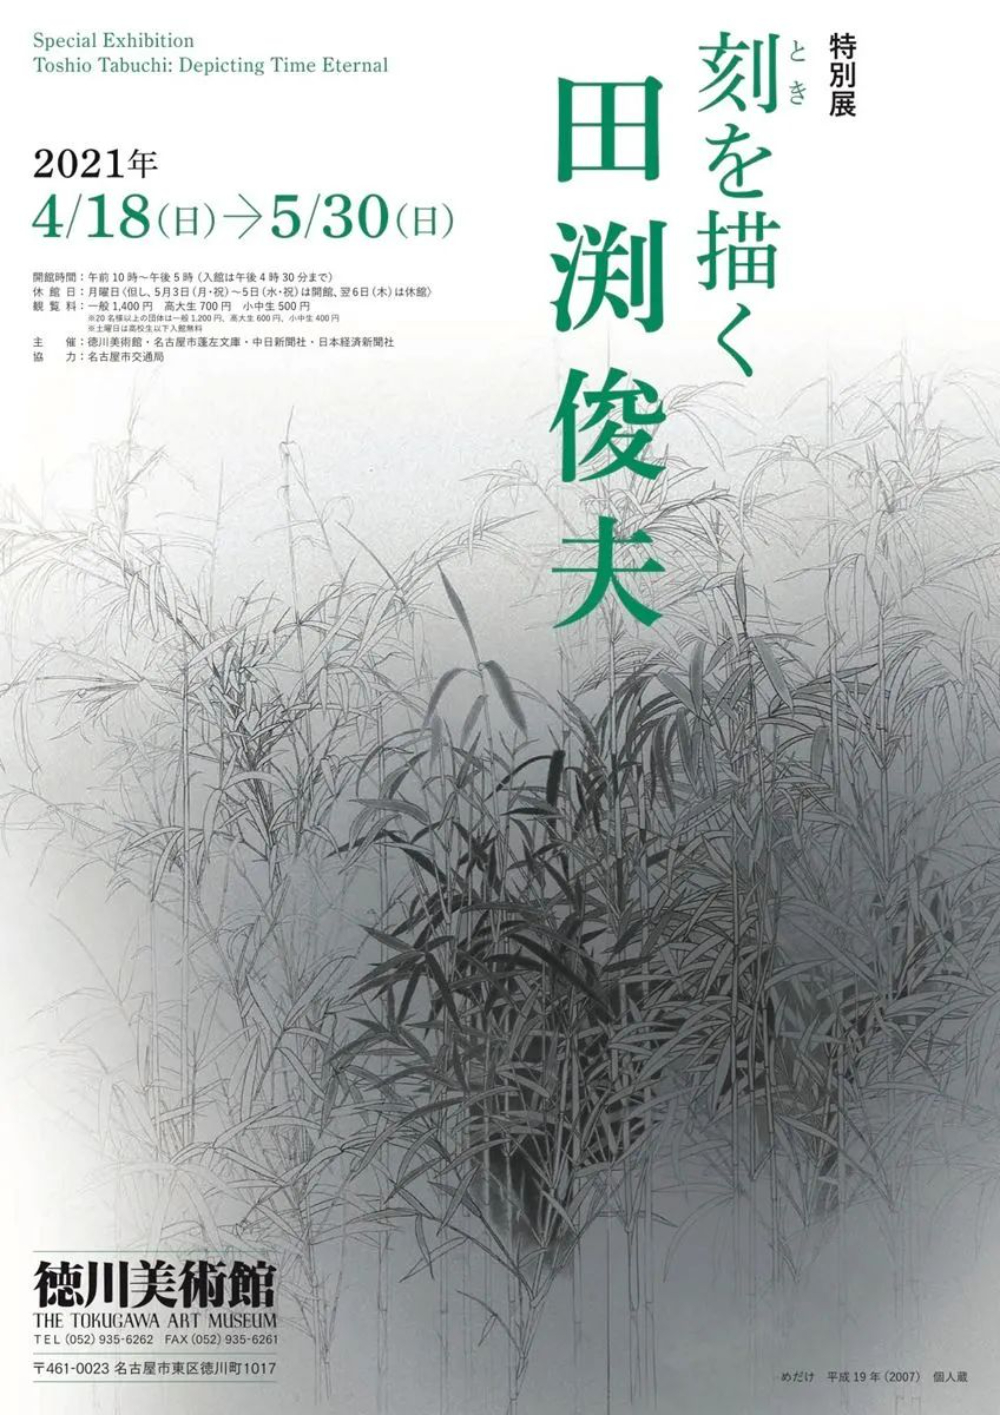 12张日本美术展展览海报 优优教程网 自学就上优优网 Uiiiuiii Com